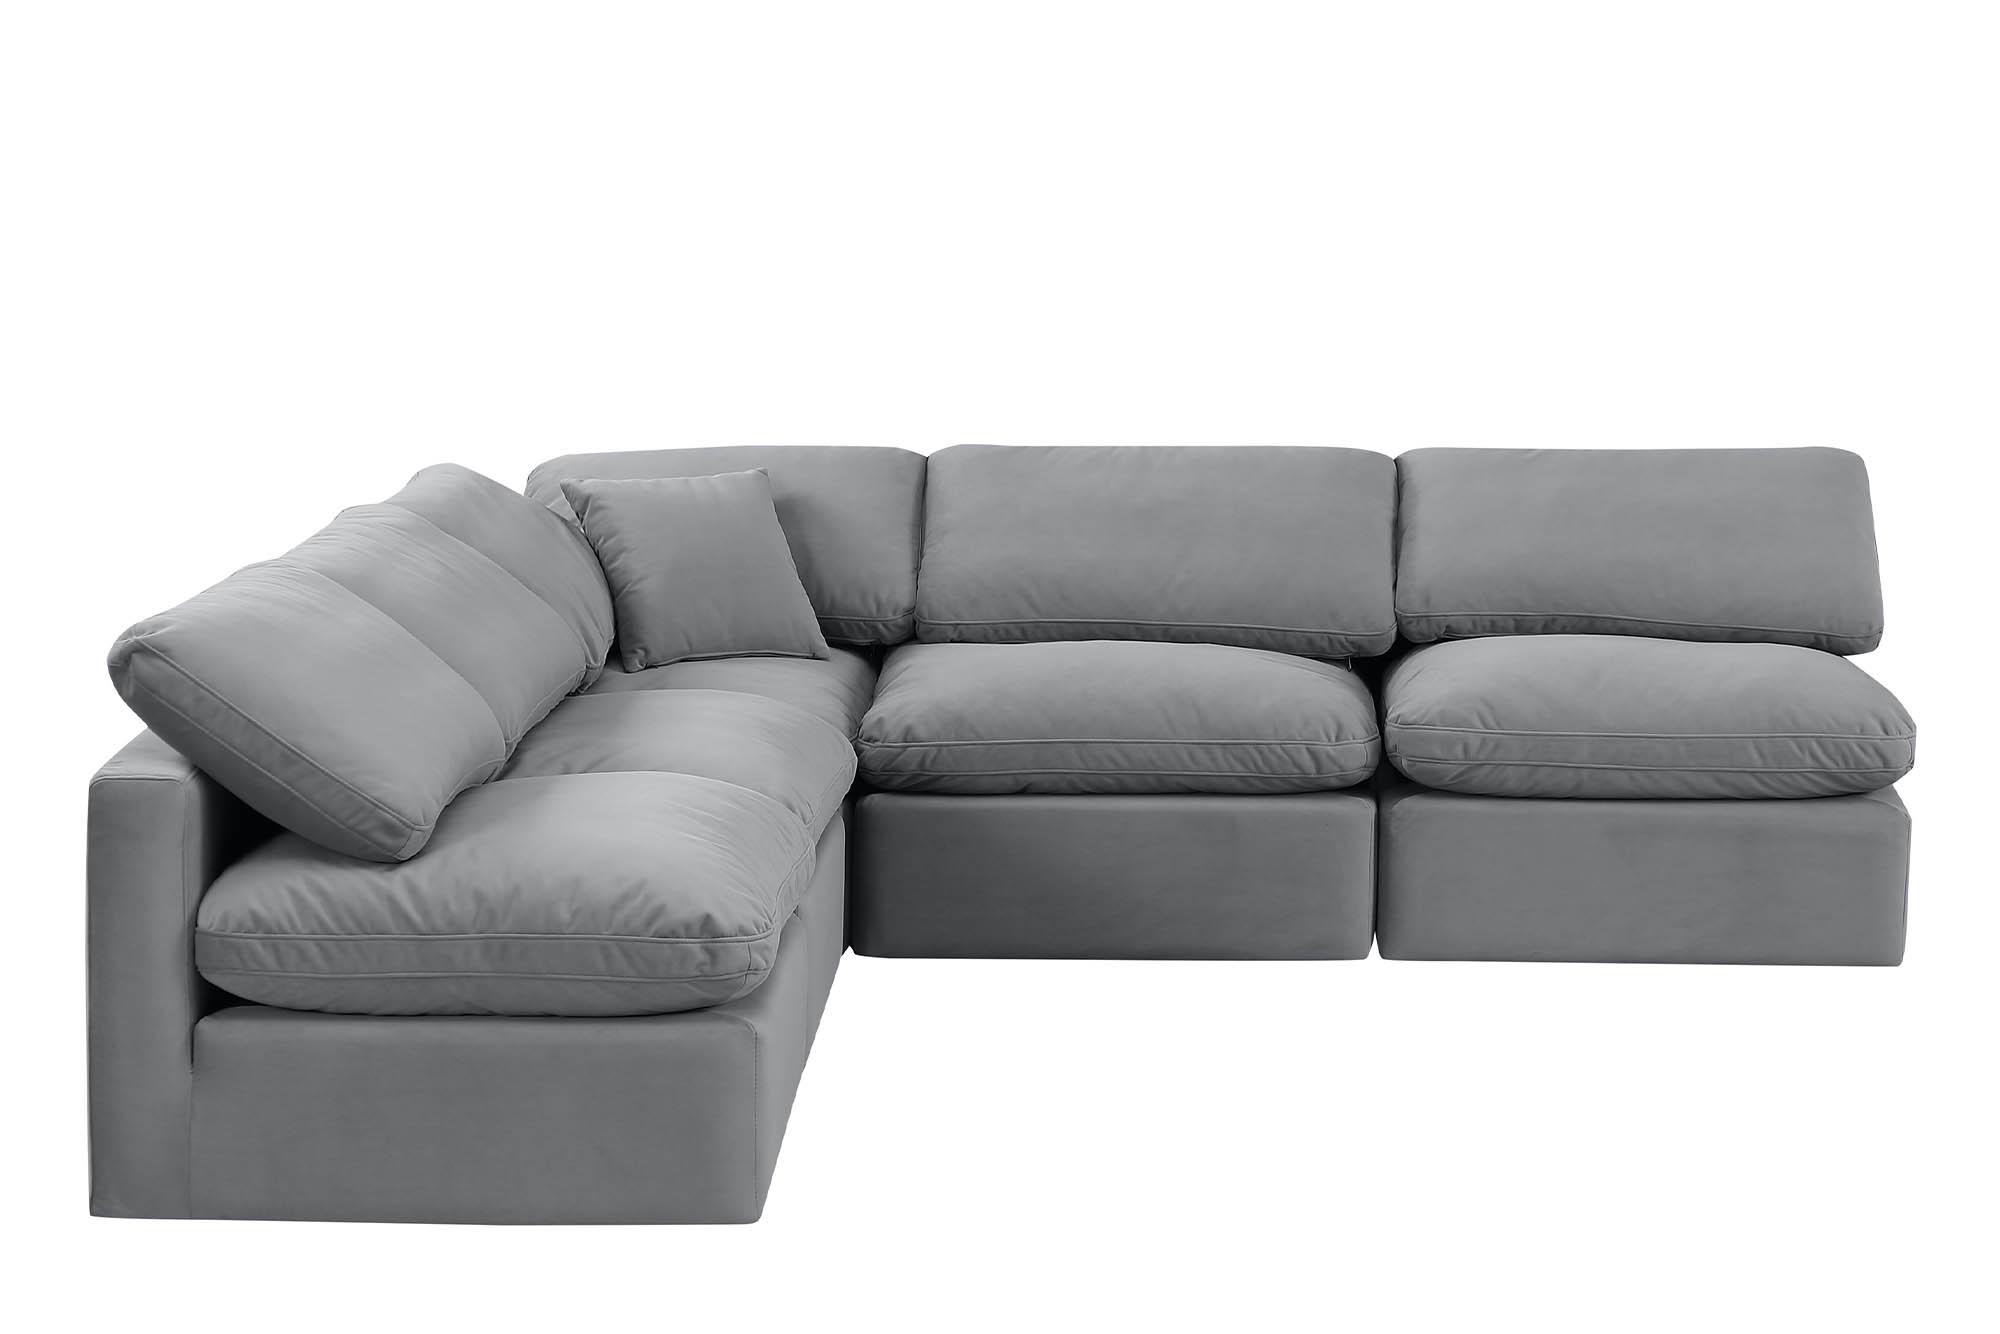 

    
Meridian Furniture INDULGE 147Grey-Sec5B Modular Sectional Sofa Gray 147Grey-Sec5B
